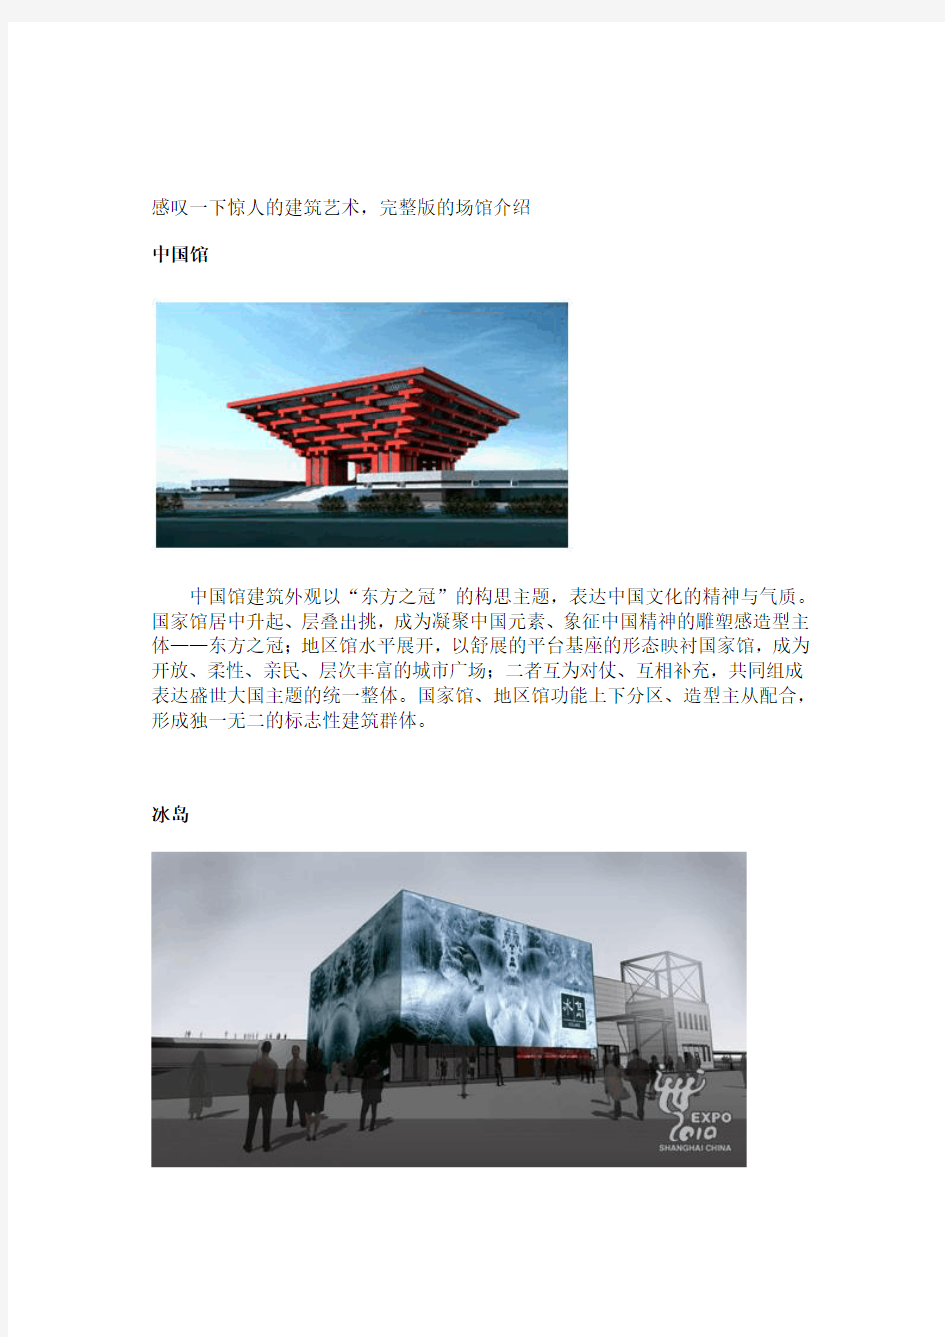 2010年上海世博会场馆介绍——完整版